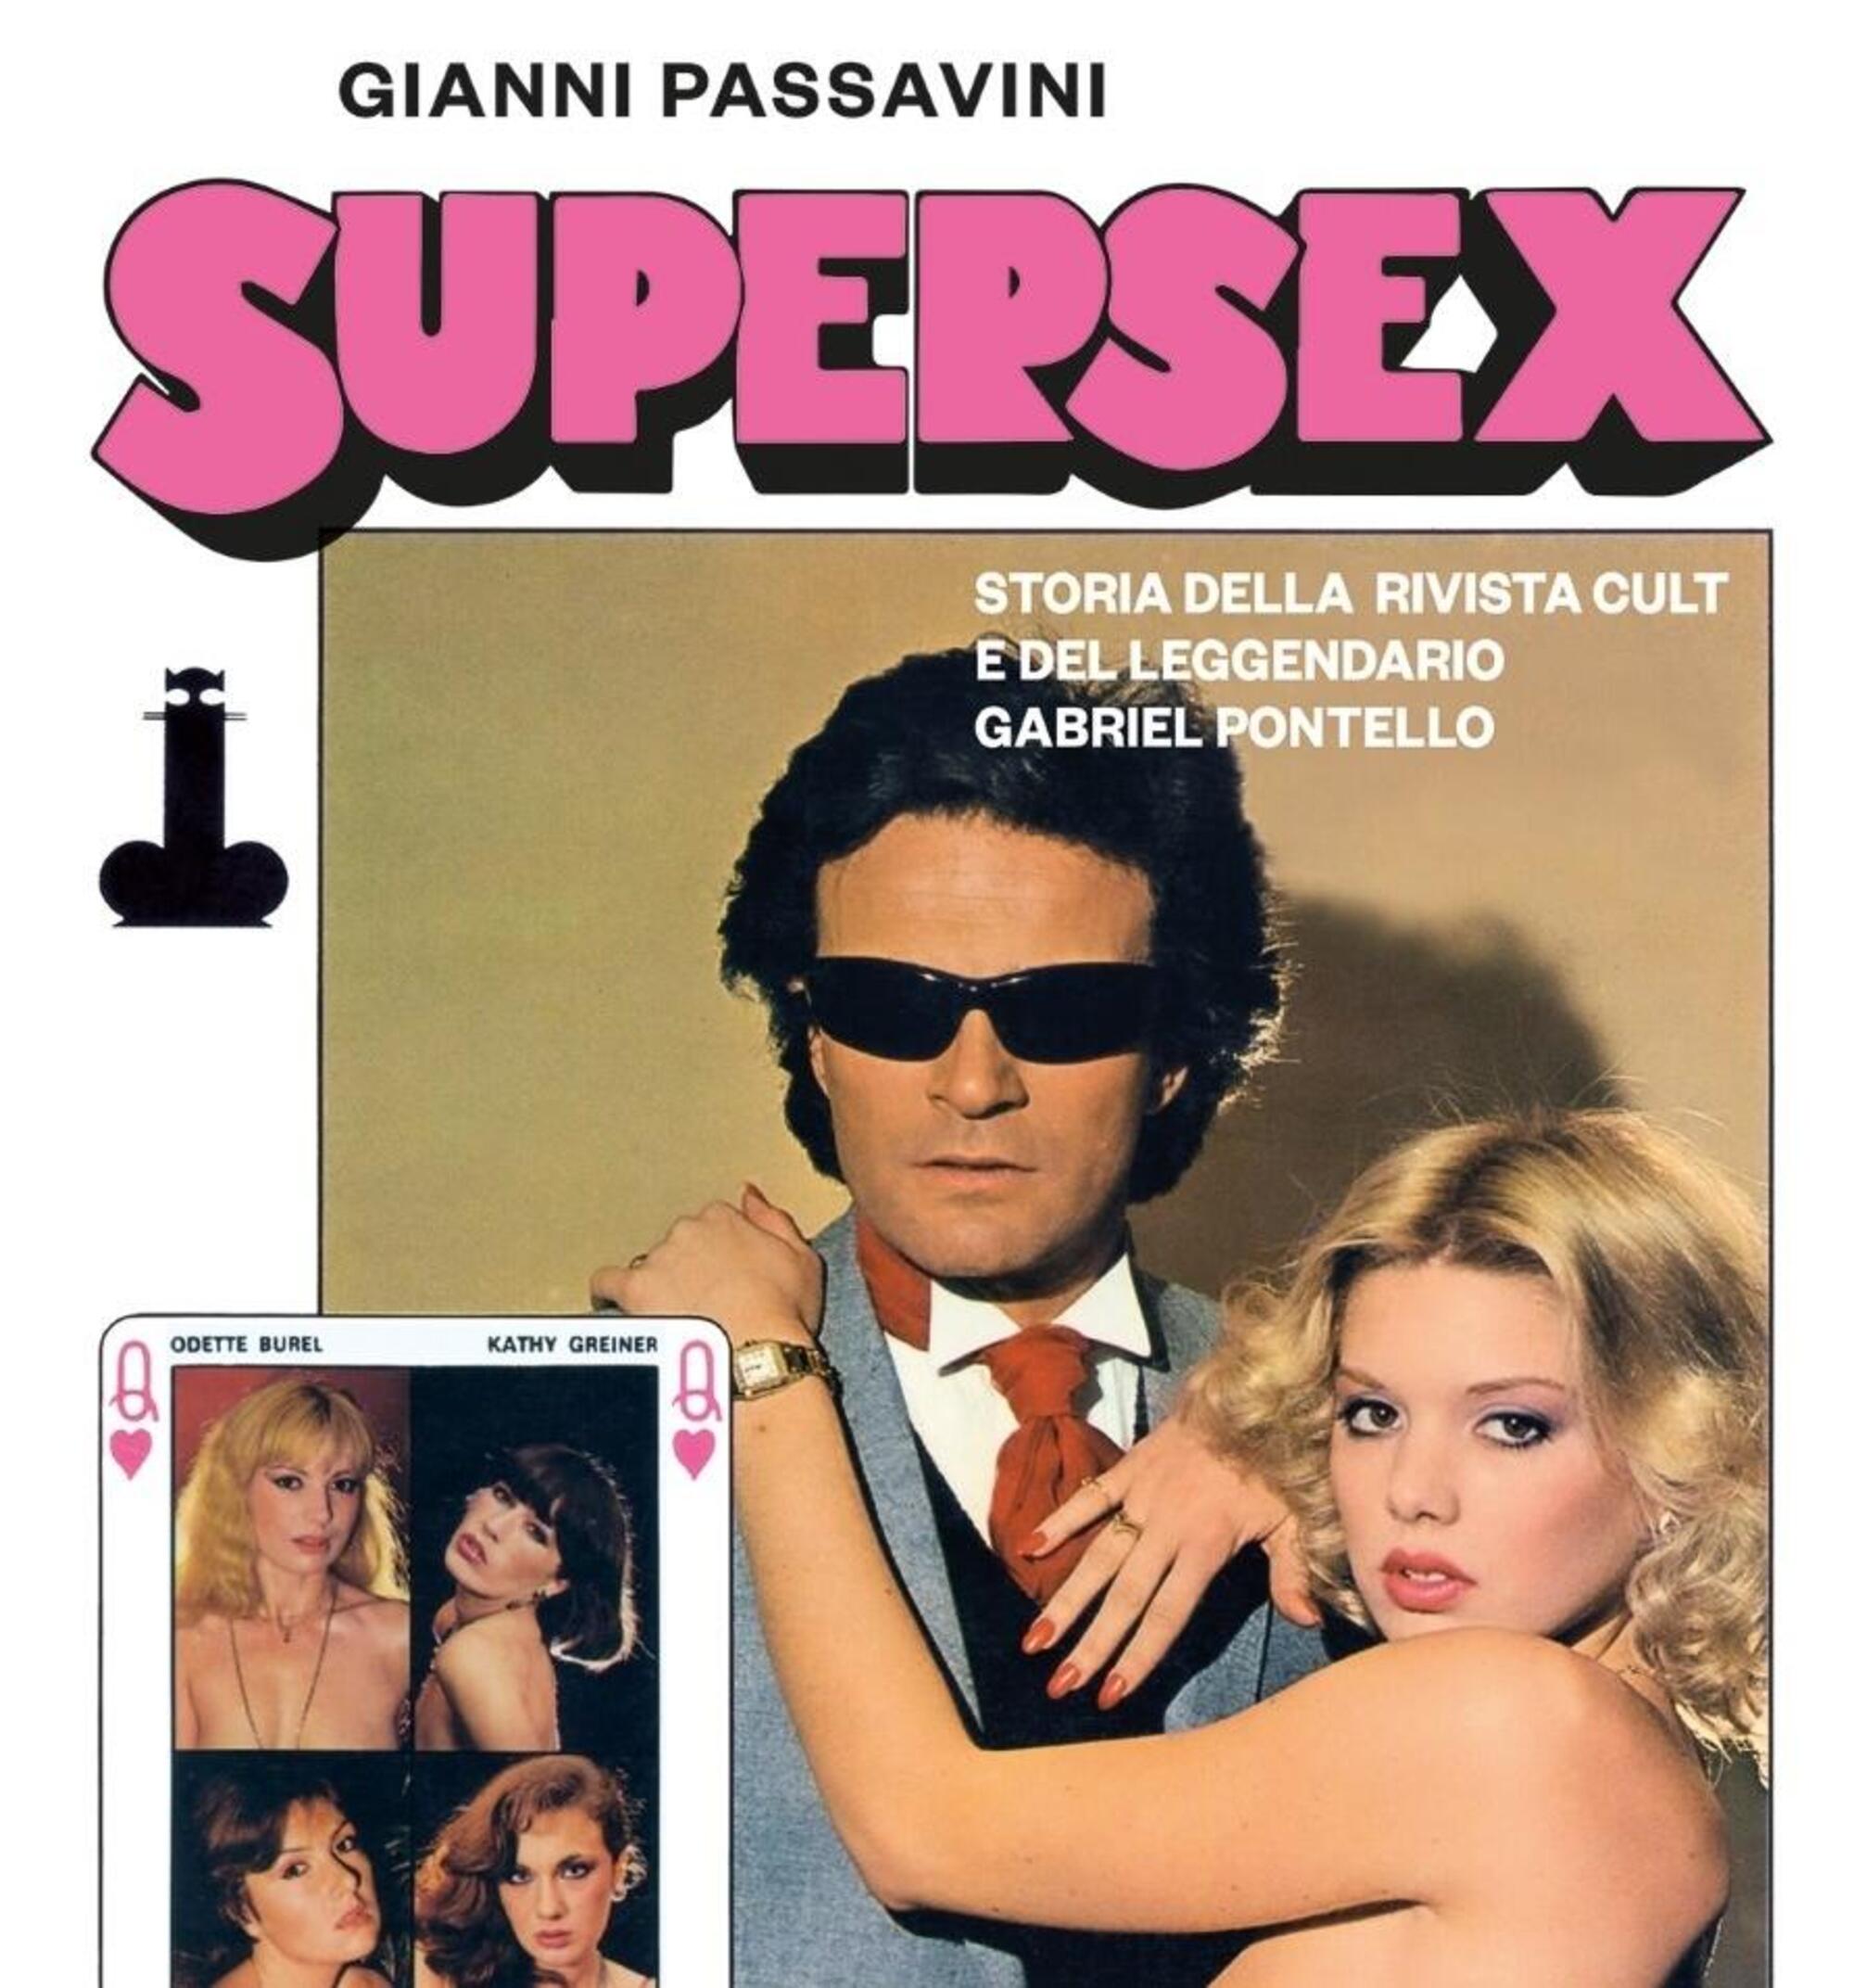 Supersex, la storia della rivista cult e del mitologico Gabriel Pontello, precursore di Rocco Siffredi, raccontata da Gianni Passavini - MOW